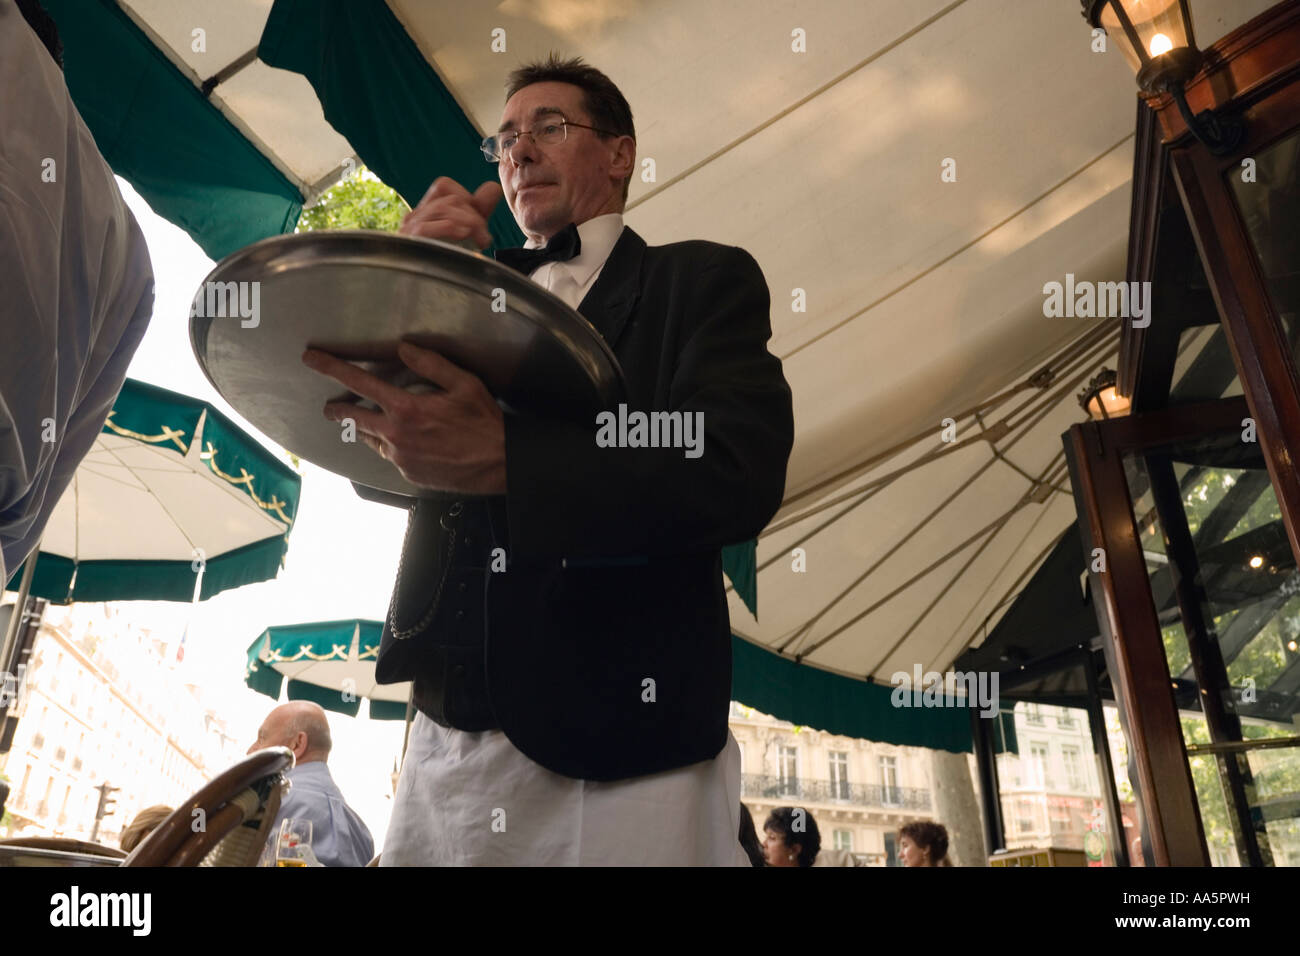 Waiter at Cafe Les Deux Magots, St Germain des Pres, Paris, France Stock Photo